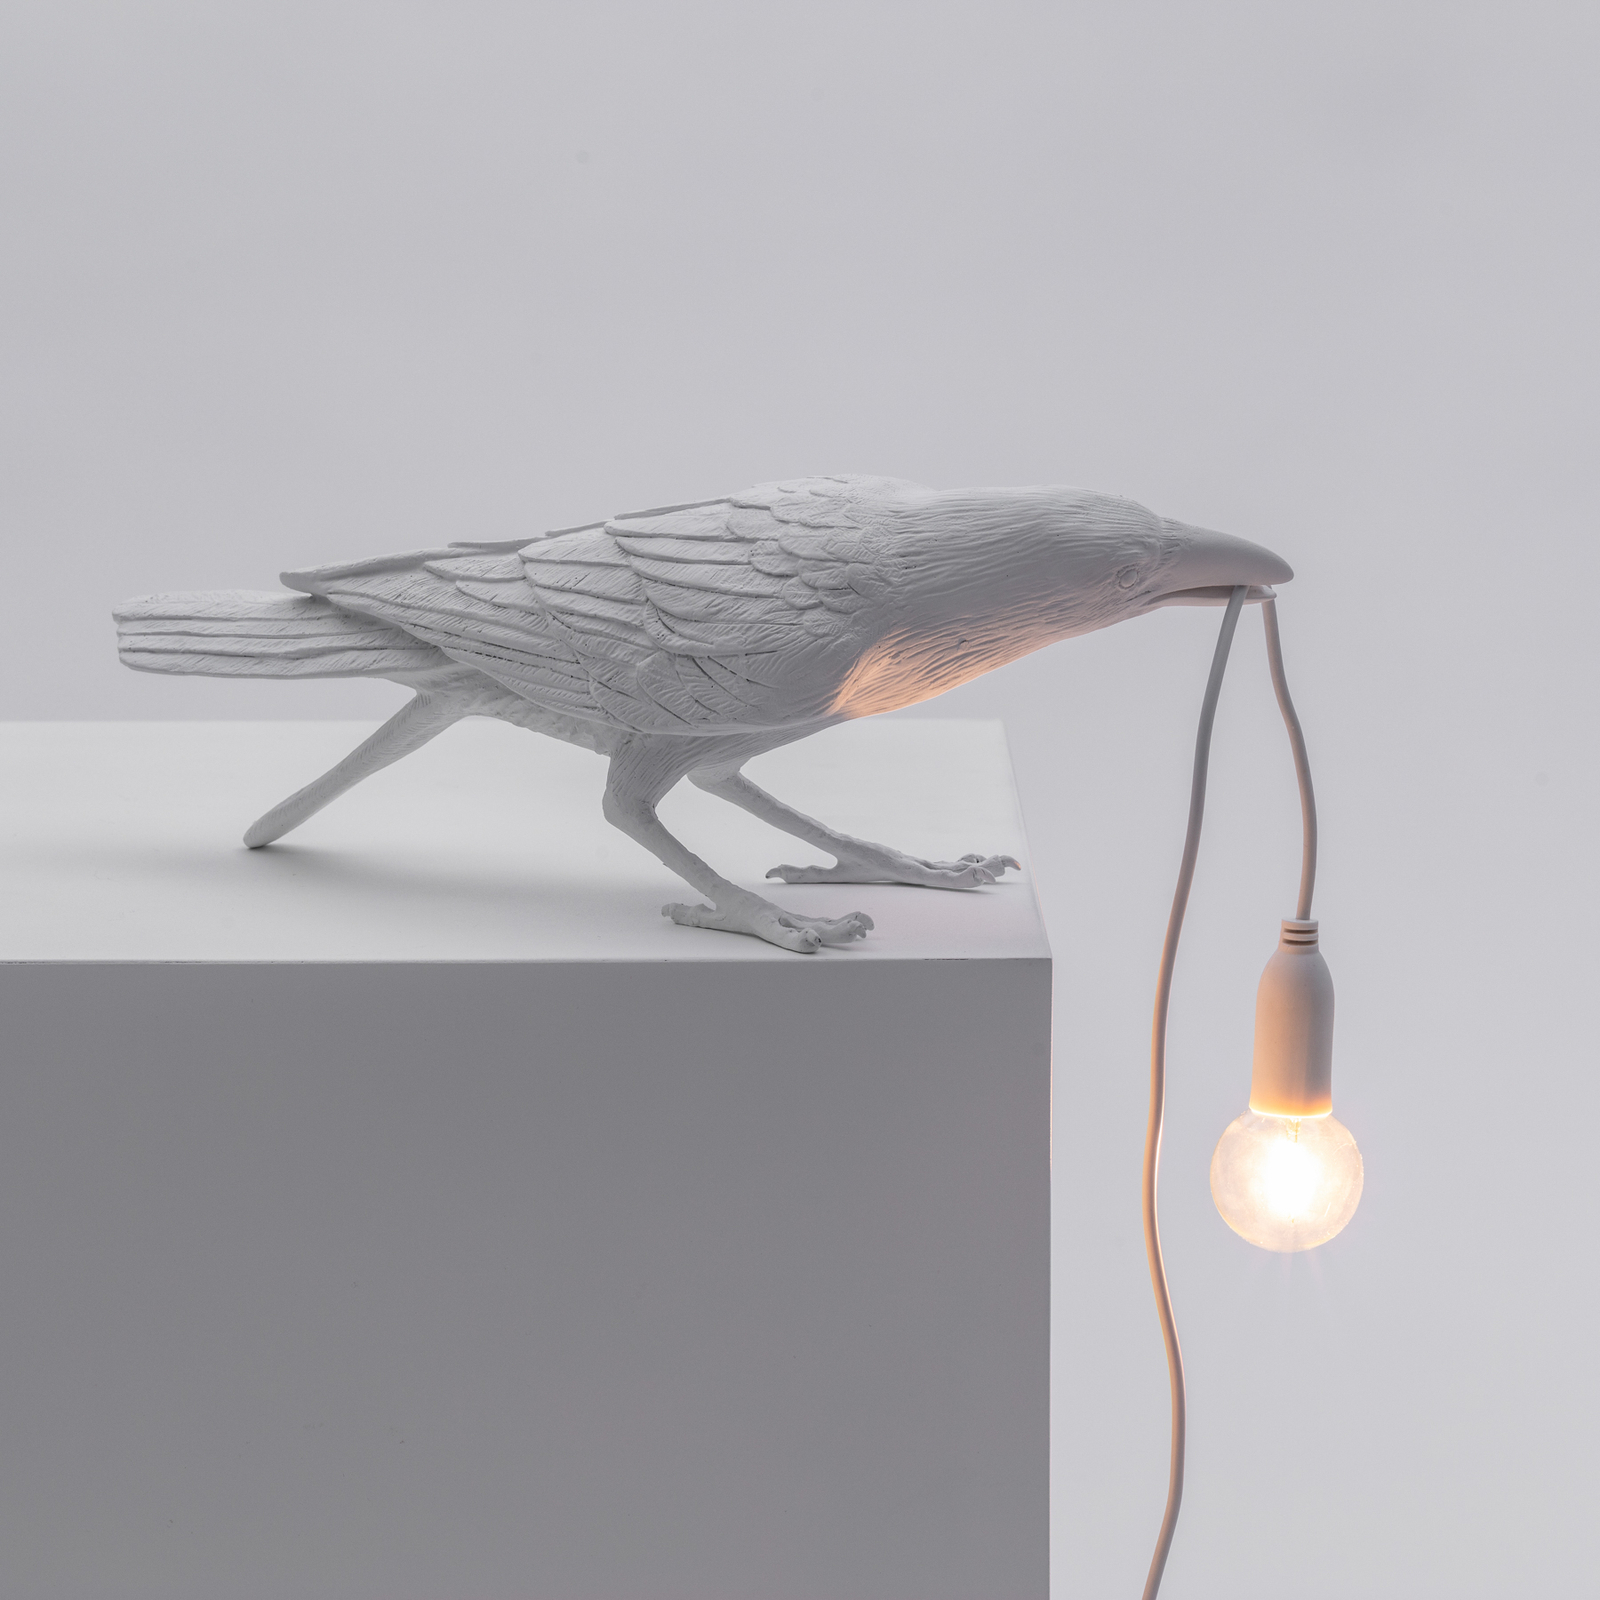 SELETTI Bird Lamp LED-Dekotischlampe spielend weiß